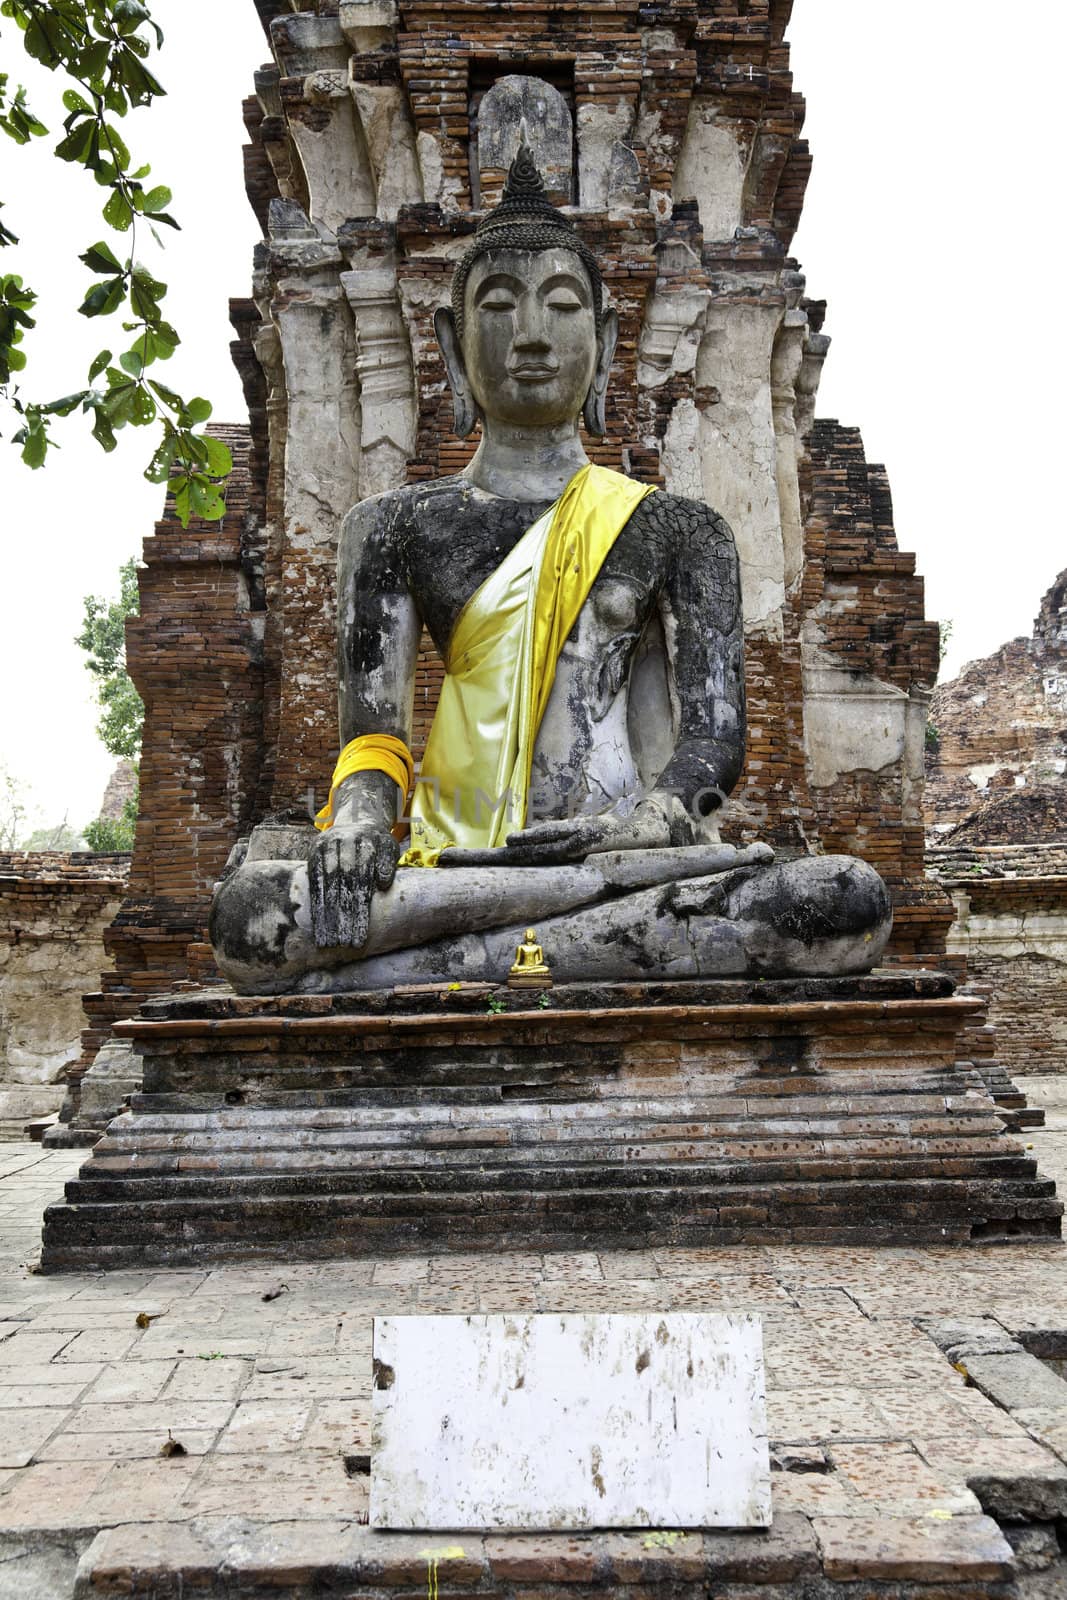 ancient seated buddha image at wat mahathat, ayutthaya, thailand